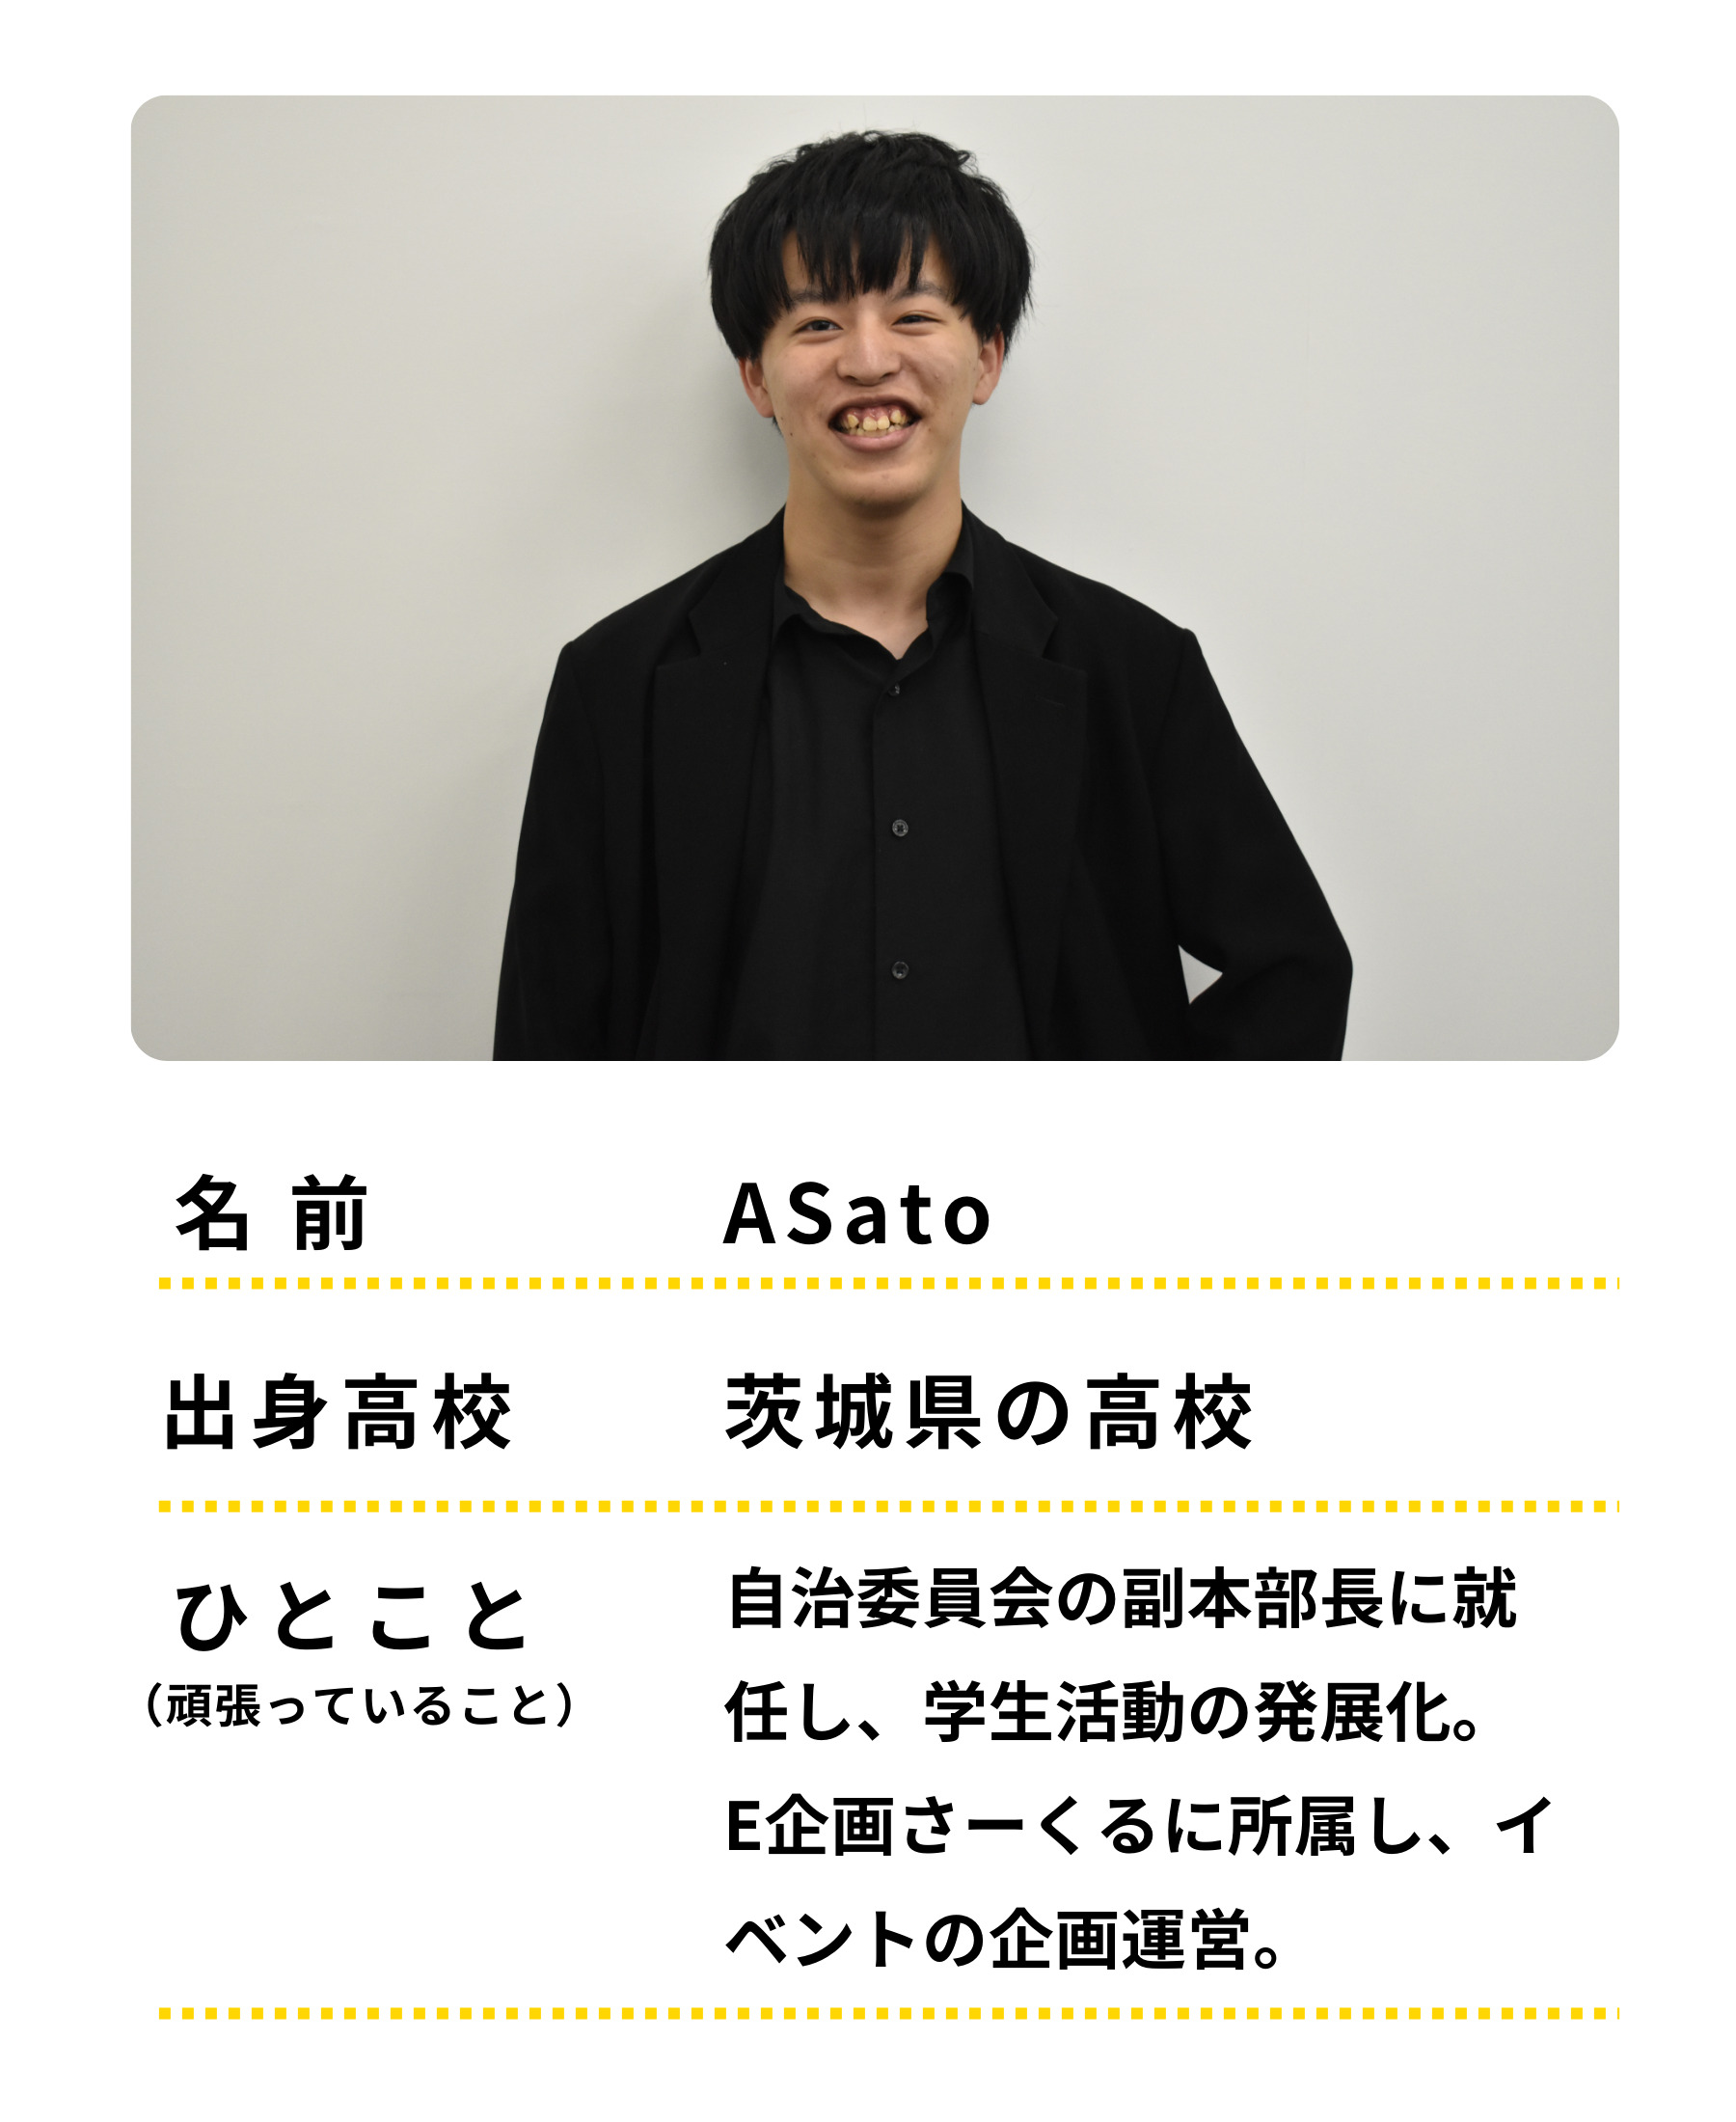 名前：Asato　出身高校：茨城の高校　ひとこと：自治委員会の副本部長に就任し、学生活動の発展化。E企画さーくるに所属し、イベントの企画運営等も頑張っています。